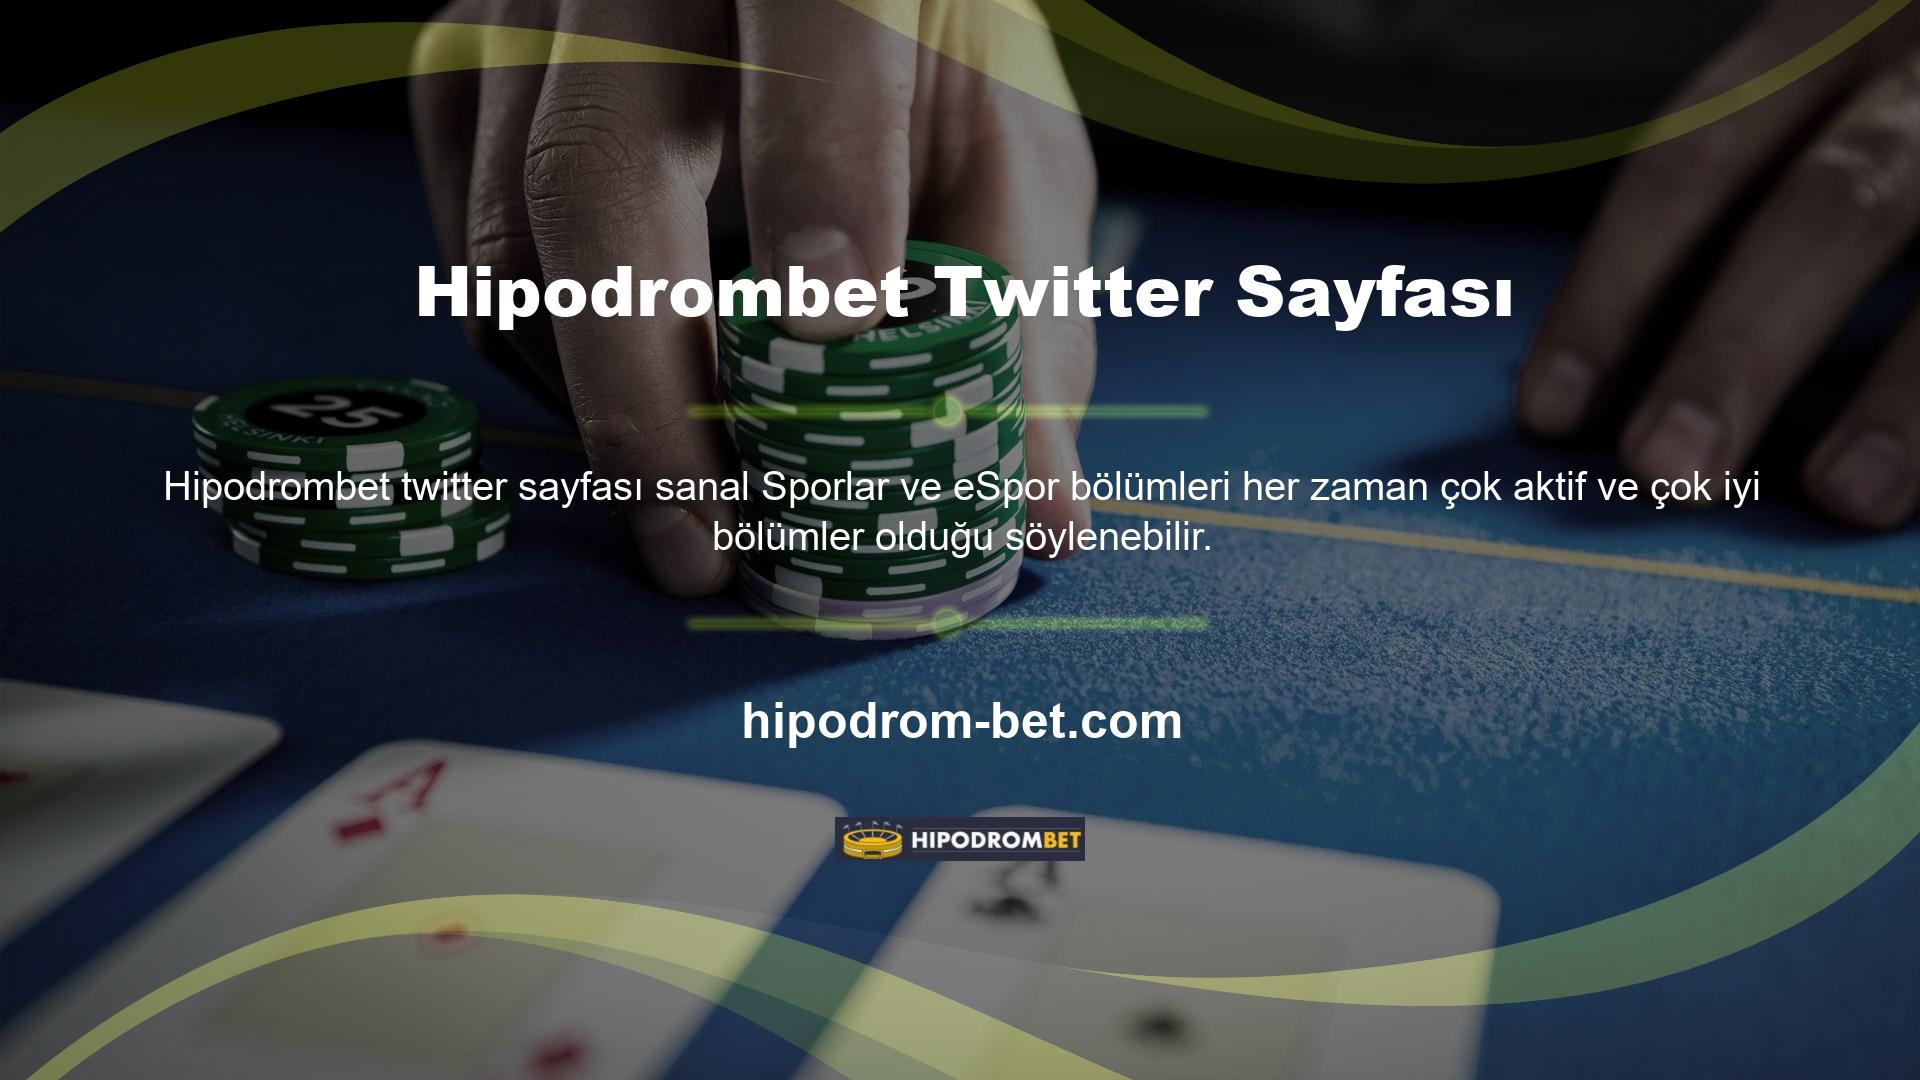 Hipodrombet Twitter'ı, nitelikli bahis kullanıcılarına sanal bahis ipuçları veriyor